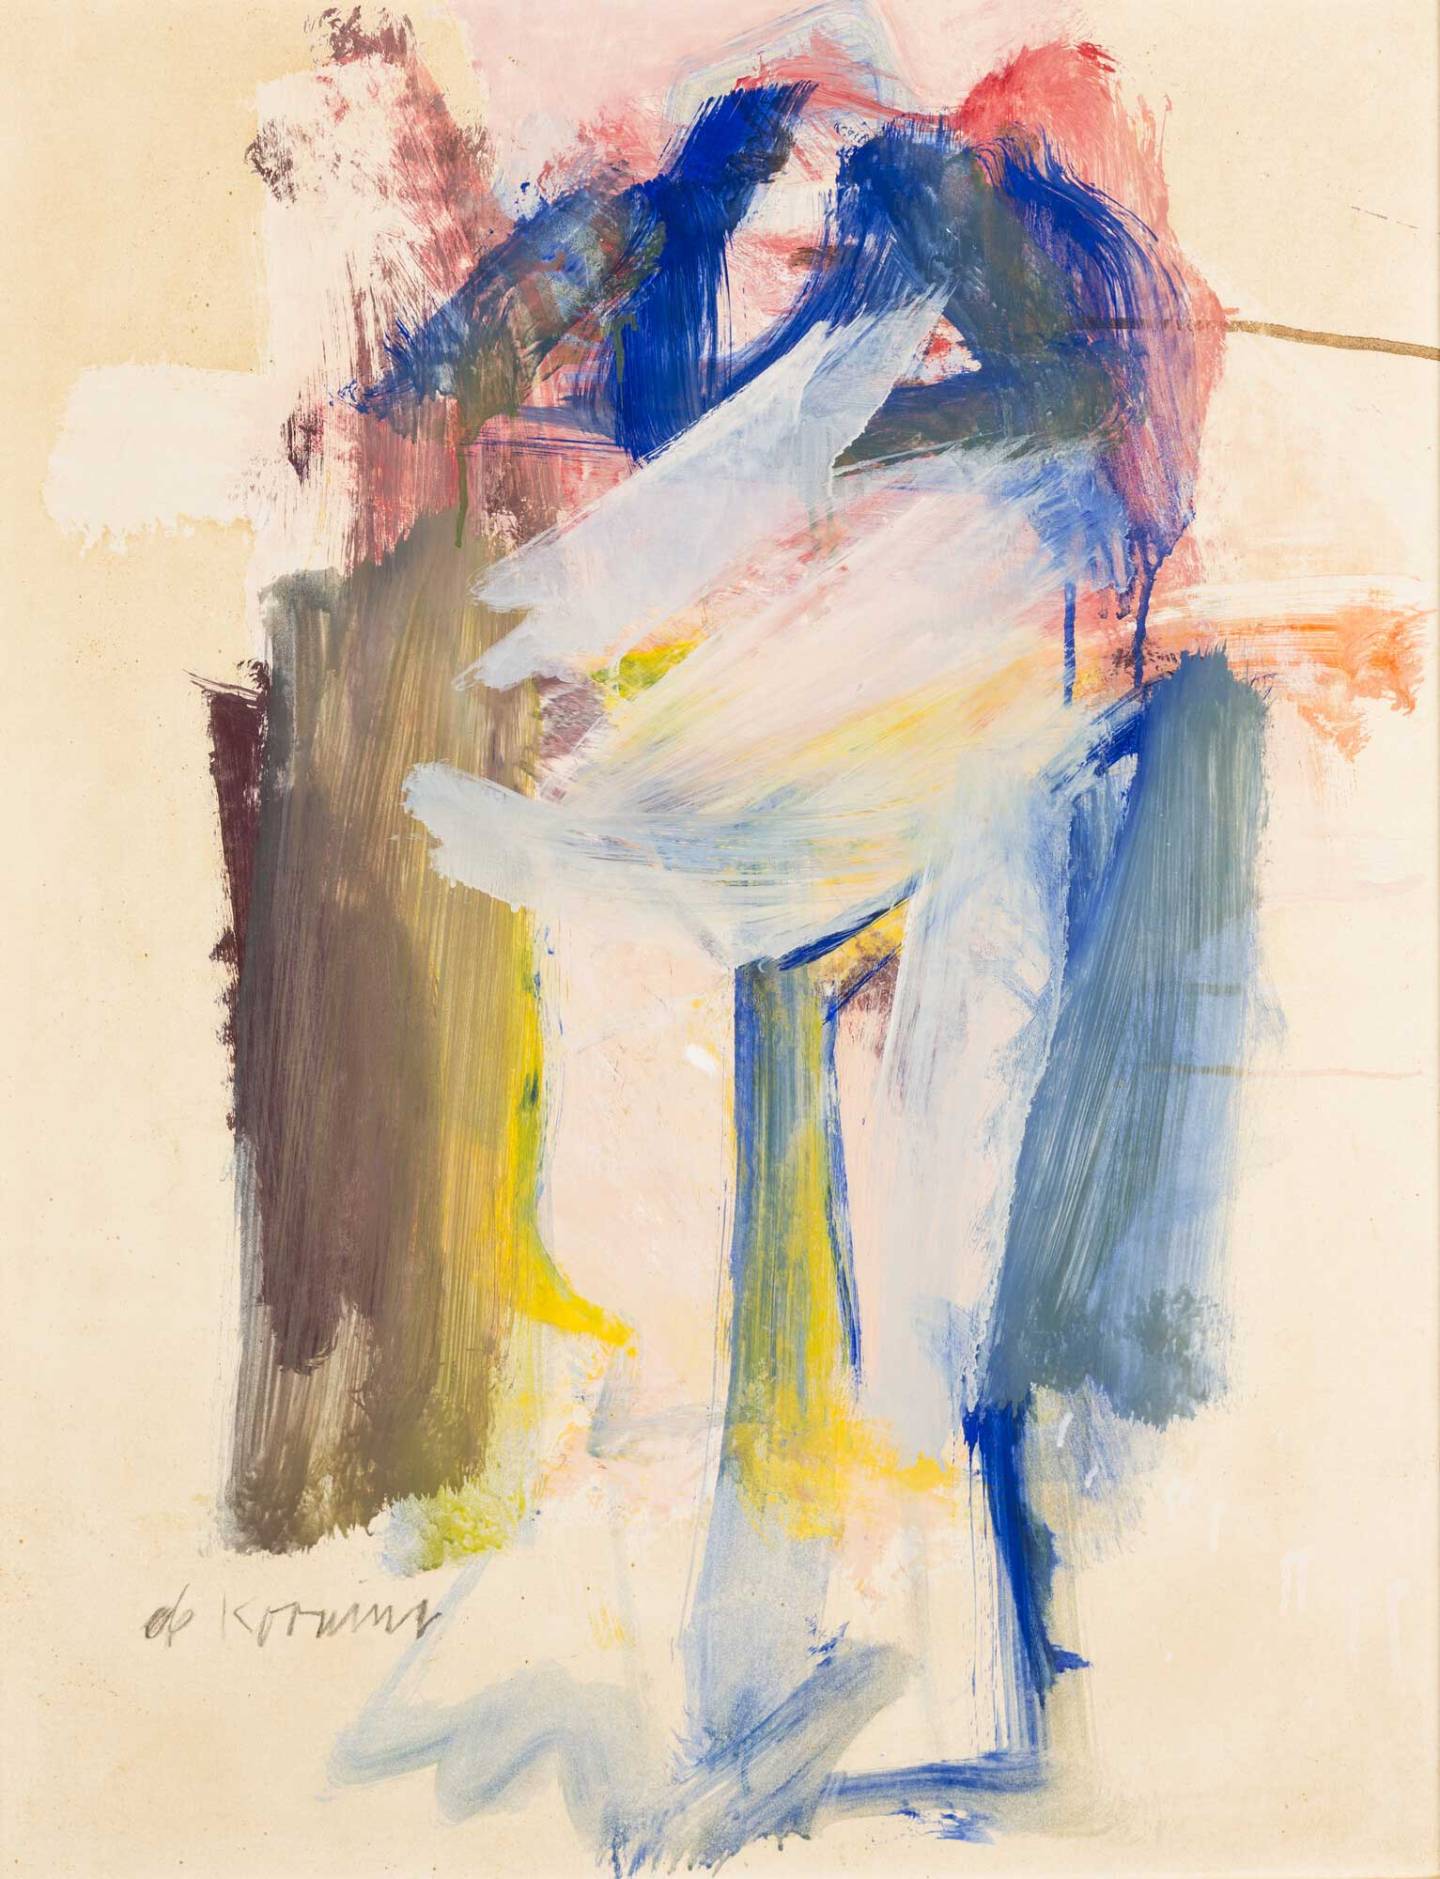 Willem de Kooning's 1961 painting "Woman II"